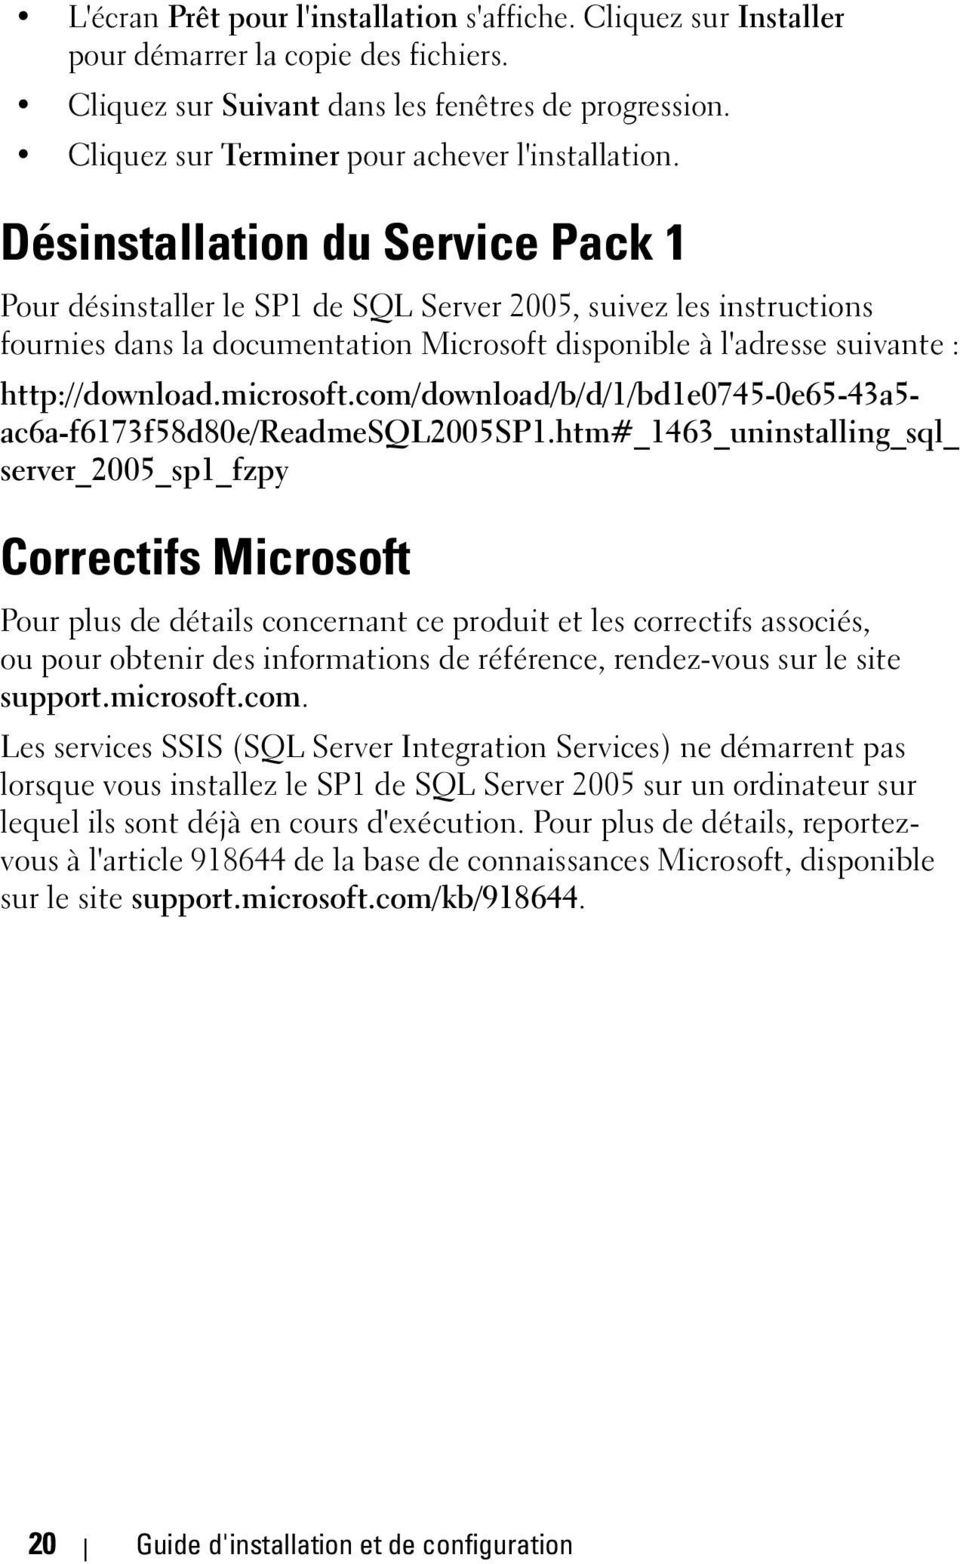 Désinstallation du Service Pack 1 Pour désinstaller le SP1 de SQL Server 2005, suivez les instructions fournies dans la documentation Microsoft disponible à l'adresse suivante : http://download.